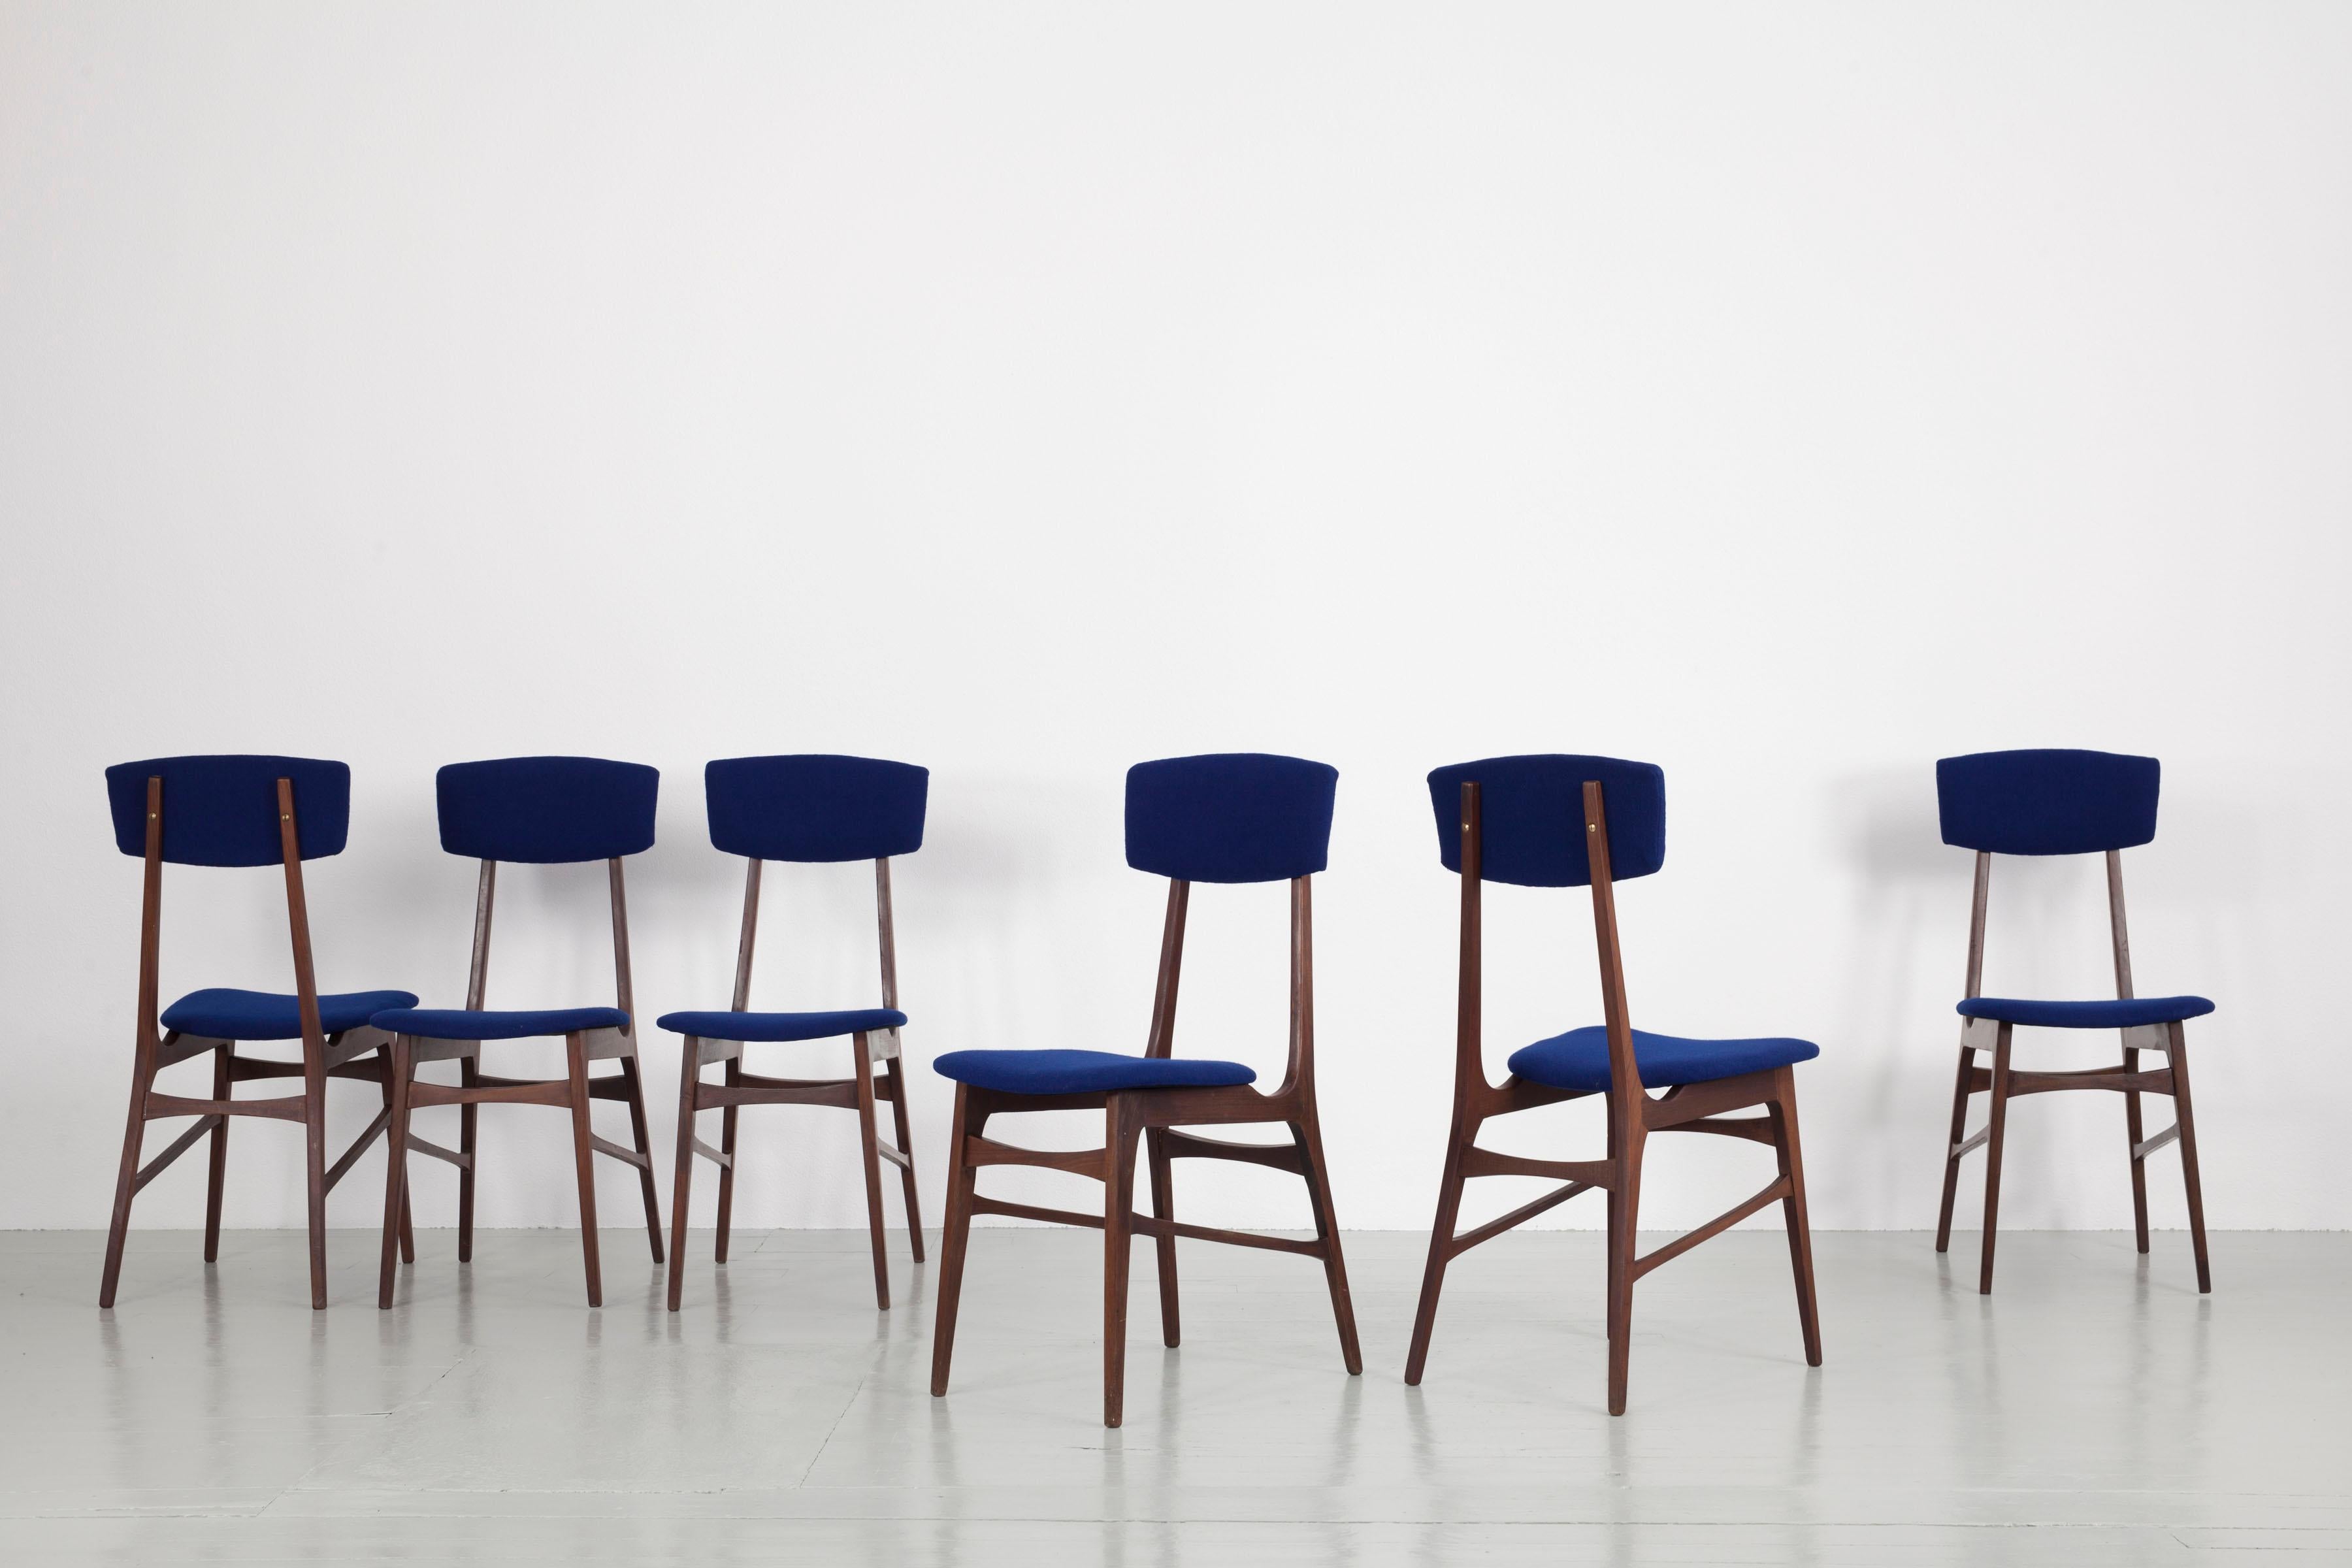 Cette chaise a été conçue et fabriquée en Italie dans les années 1960 par Pompeo Fumagalli-Mariano
Comese. La structure légère et délicate est faite de bois teinté foncé, l'assise et le dossier sont
remeublé dans un tissu bleu profond de Kvadrat